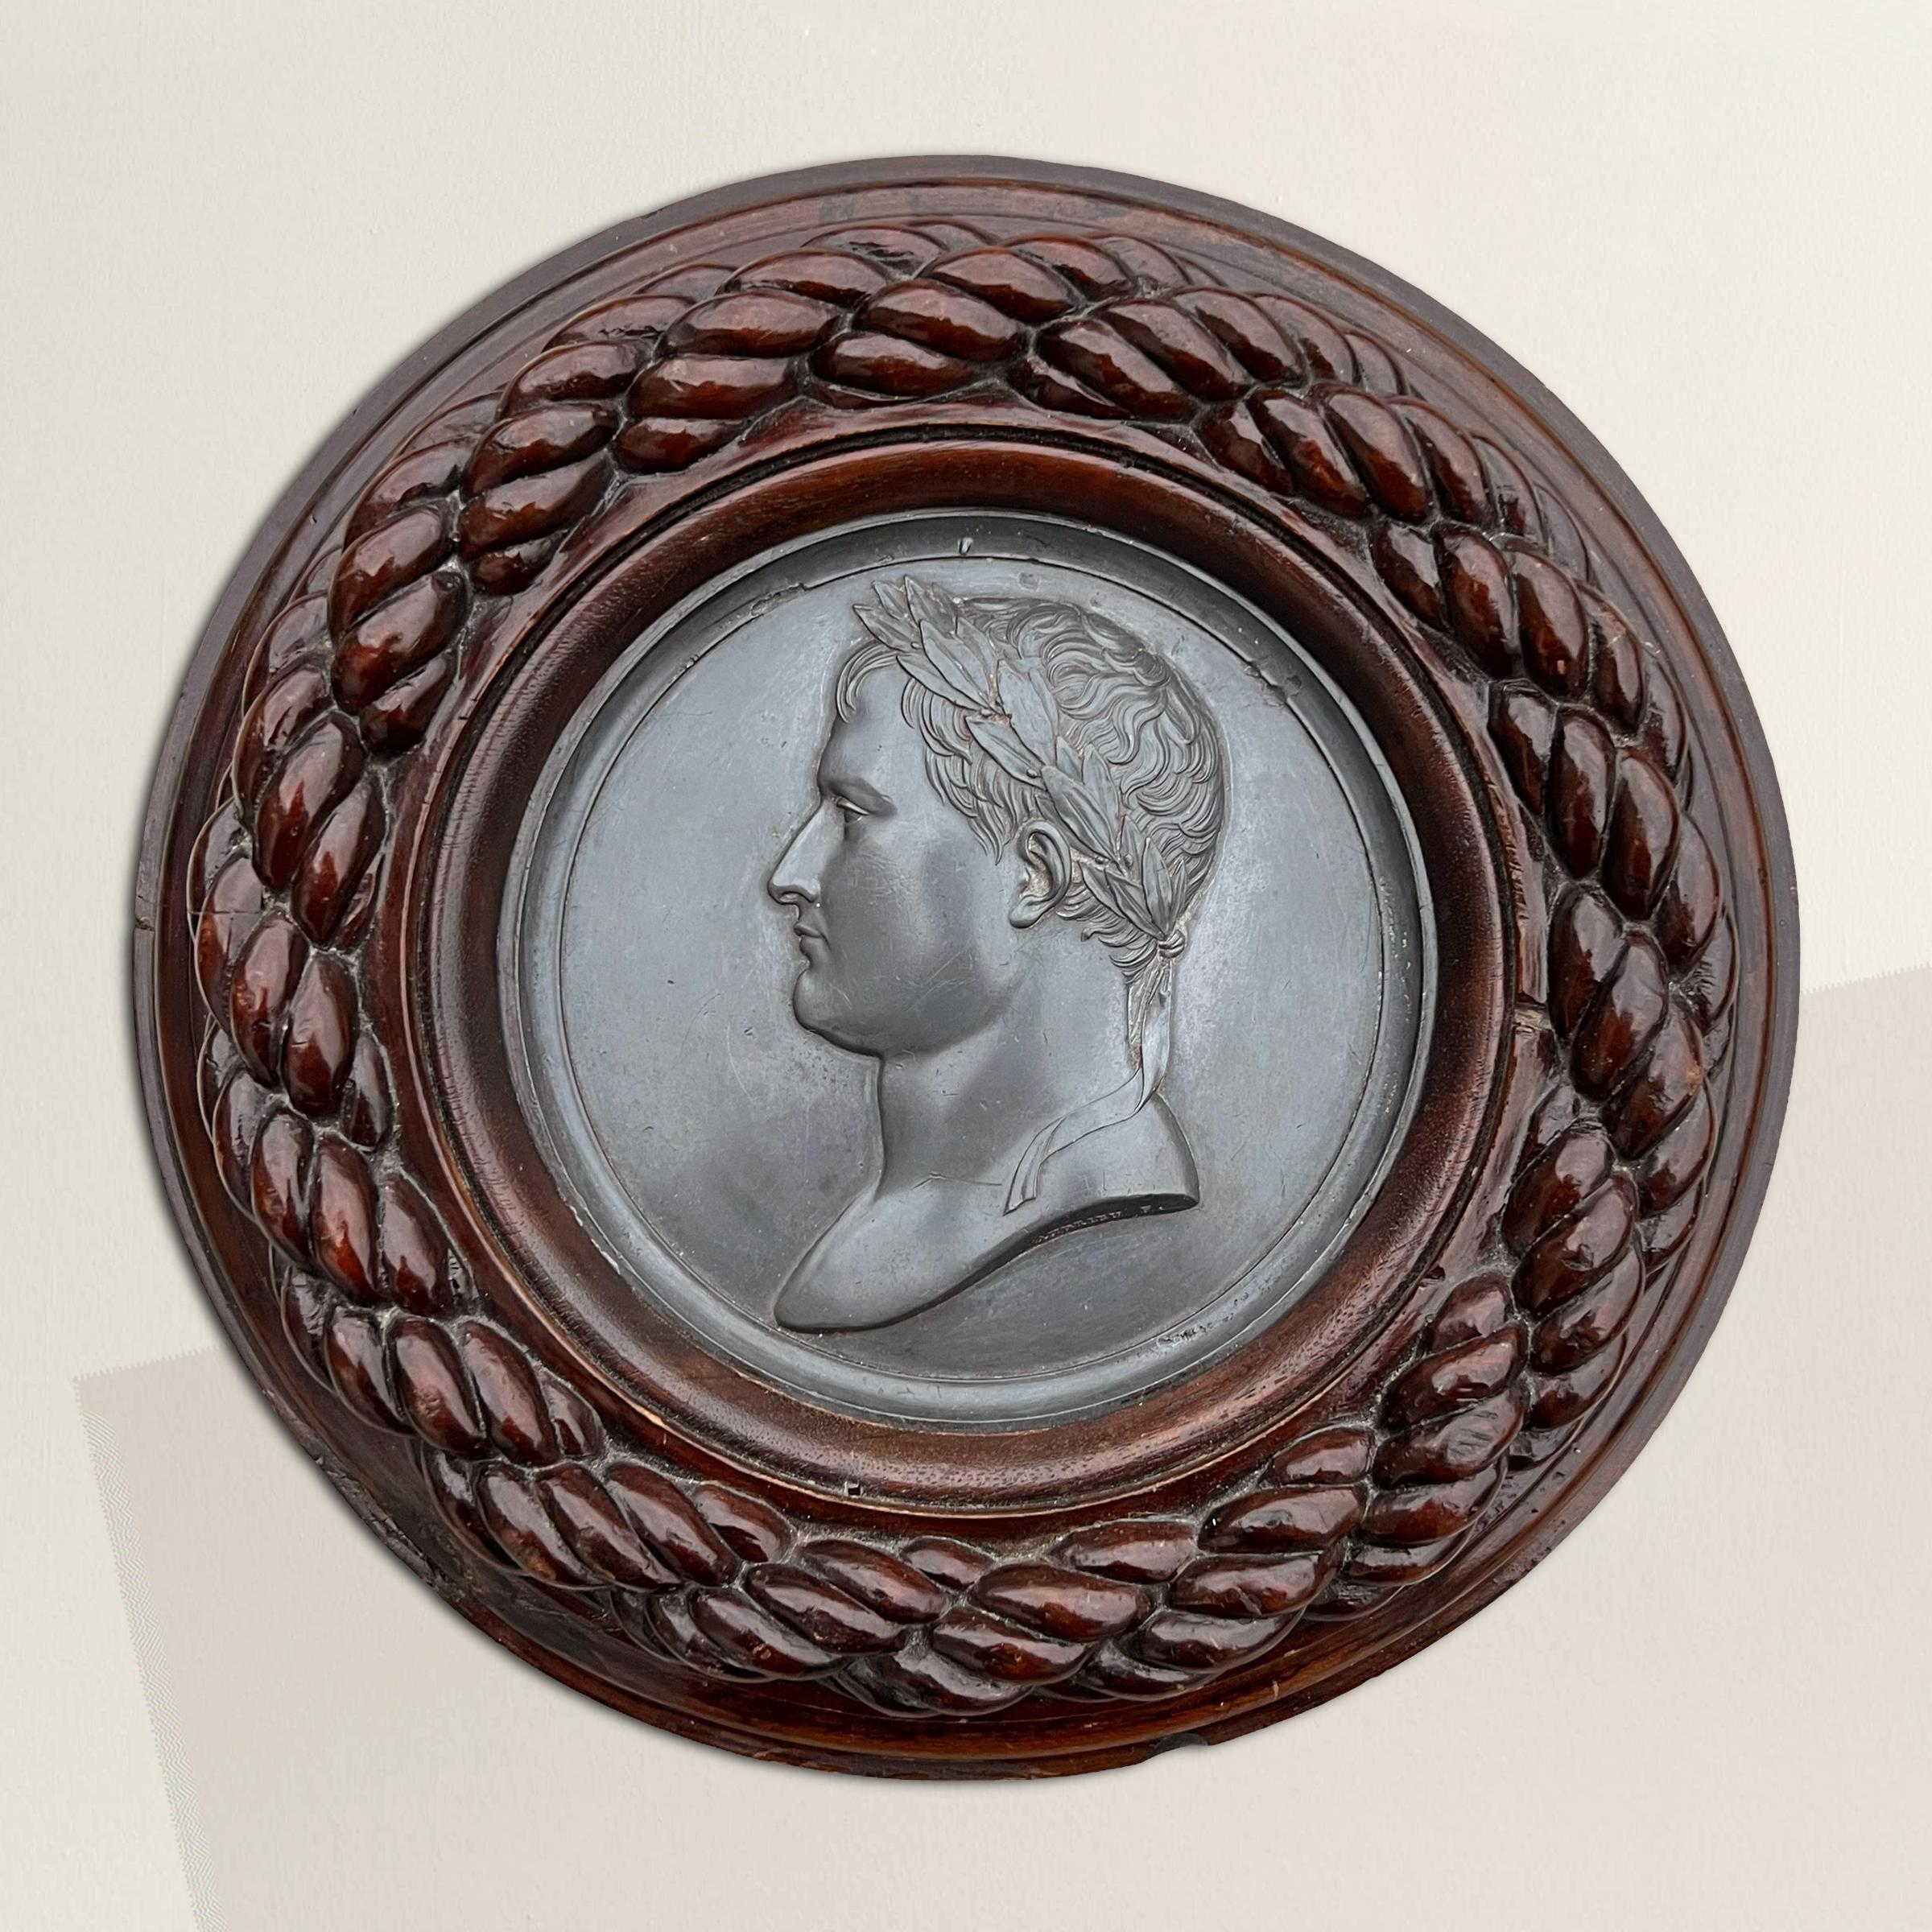 Dieses runde französische Zinngussmedaillon aus dem frühen 19. Jahrhundert, ein Meisterwerk von Bertrand Andrieu (1761-1822), fängt die Essenz der napoleonischen Ära ein. Der lorbeergekrönte Napoleon, der an römische Kaiser erinnert, symbolisiert